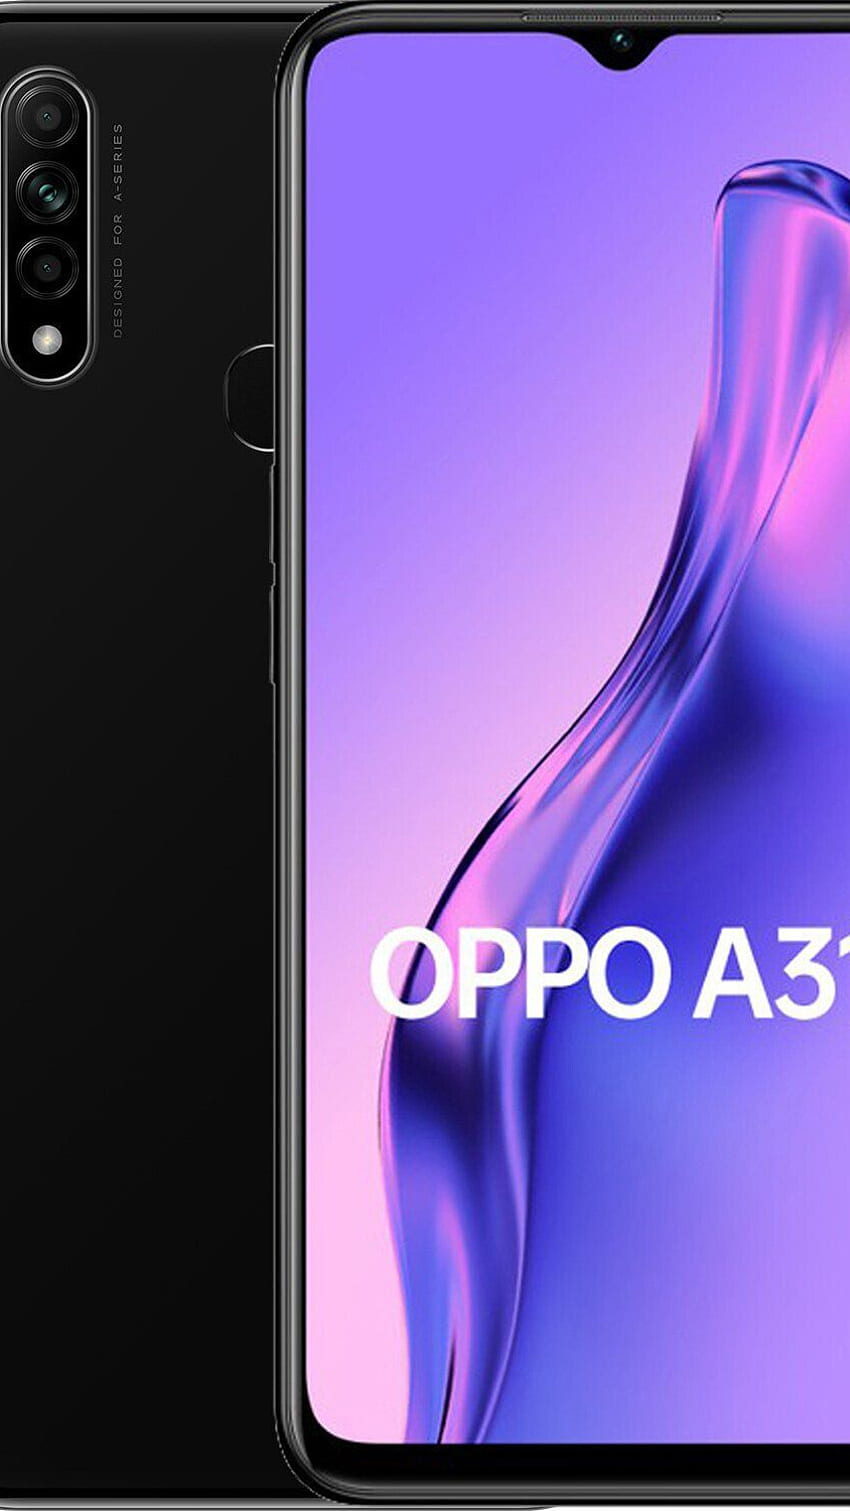 Oppo A31 - Oppo A31 là chiếc điện thoại tuyệt vời cho những người yêu thích công nghệ. Điểm mạnh của chiếc điện thoại này là thiết kế đẹp, tính năng cao cấp và camera đỉnh cao. Hãy sở hữu ngay chiếc điện thoại Oppo A31 để trải nghiệm sự khác biệt.